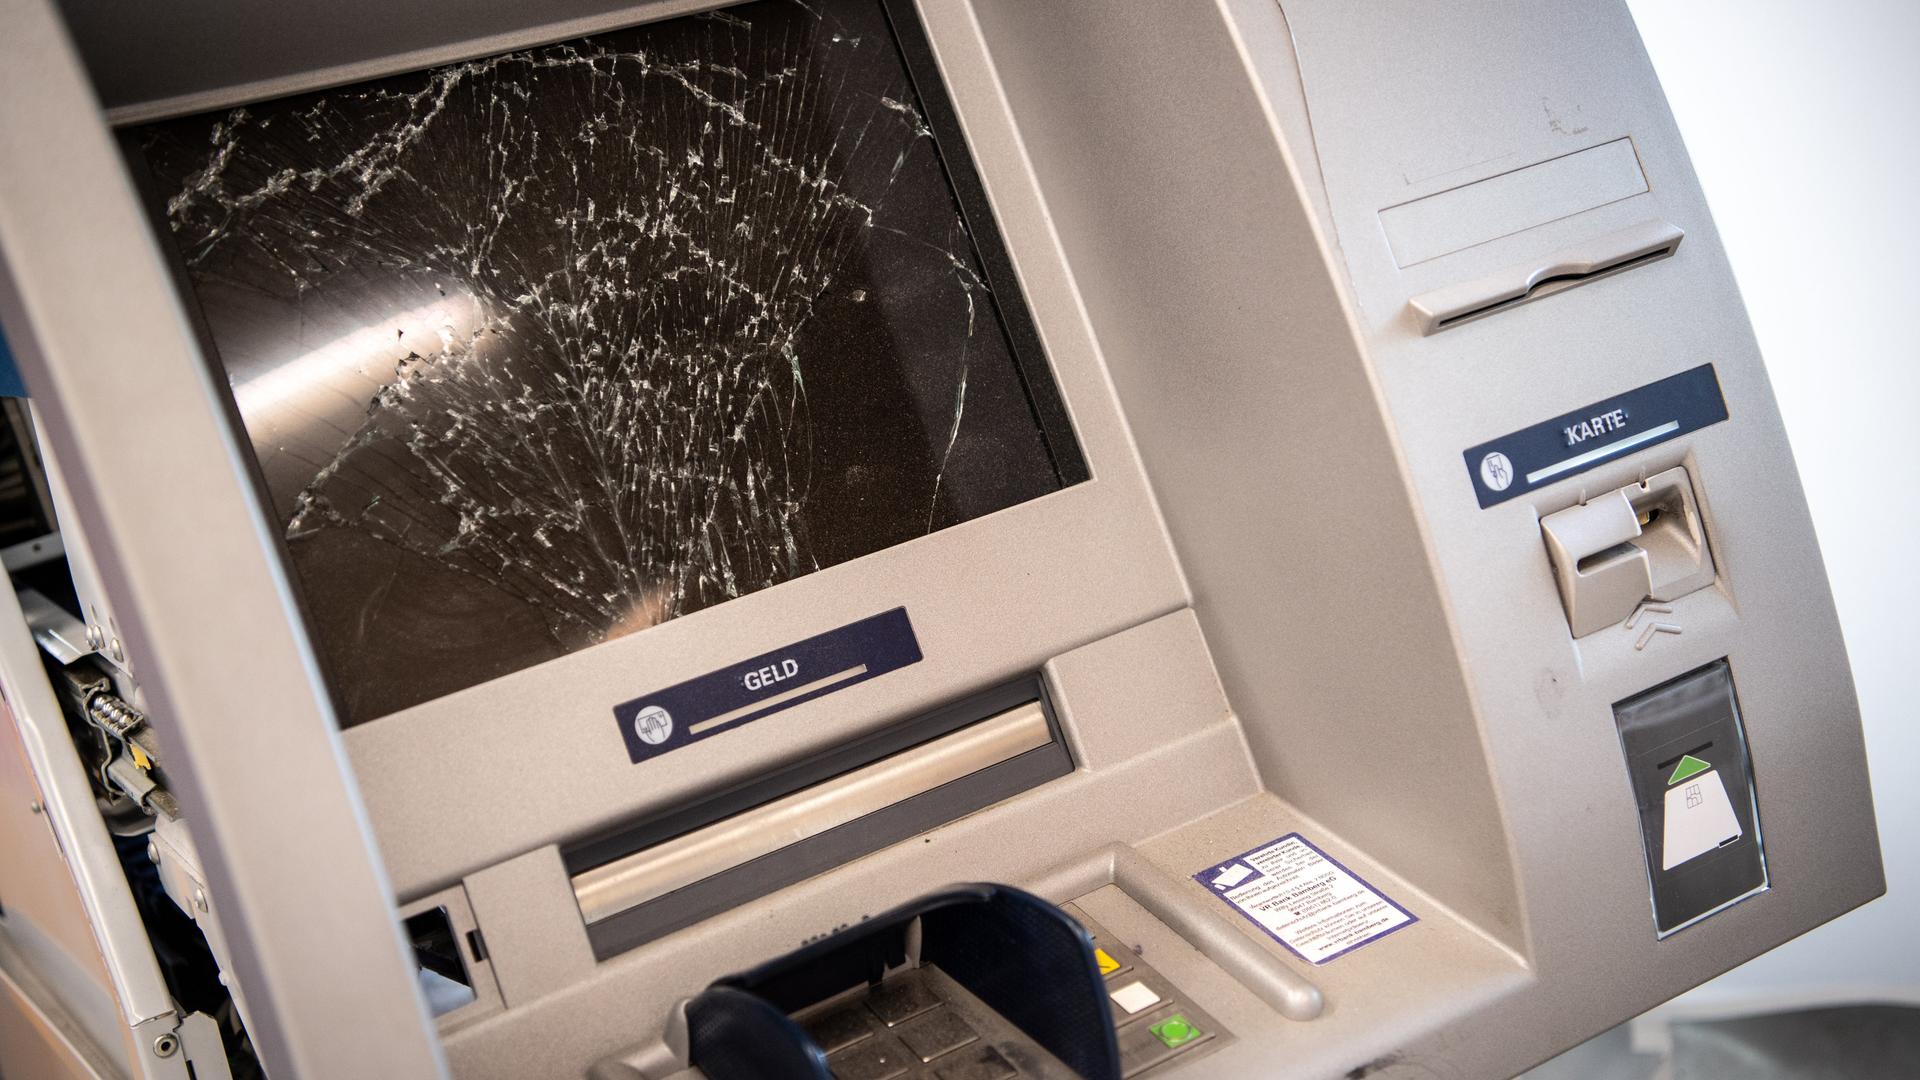 Organisierte Kriminalität: Der große Angriff auf die Geldautomaten